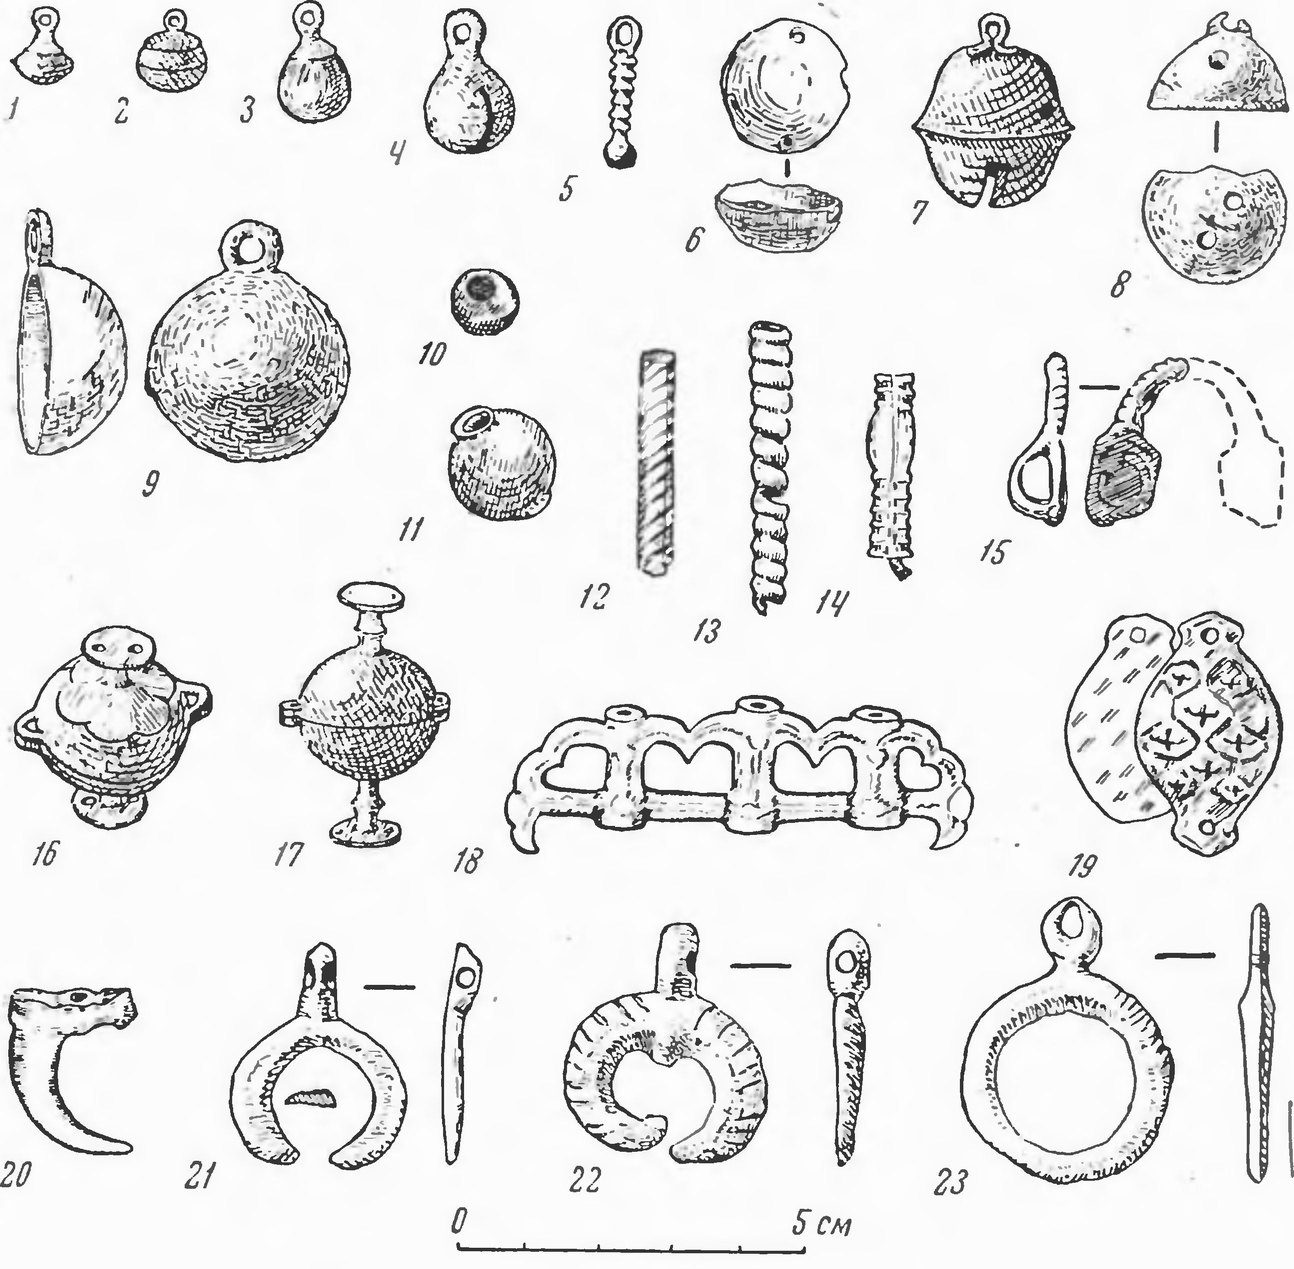 Таблица XV. Больше-Тарханский могильник. Украшения из бронзы и меди. 1—3 — пуговицы; 4—9, 15—23 — привески; 10—14 — пронизки